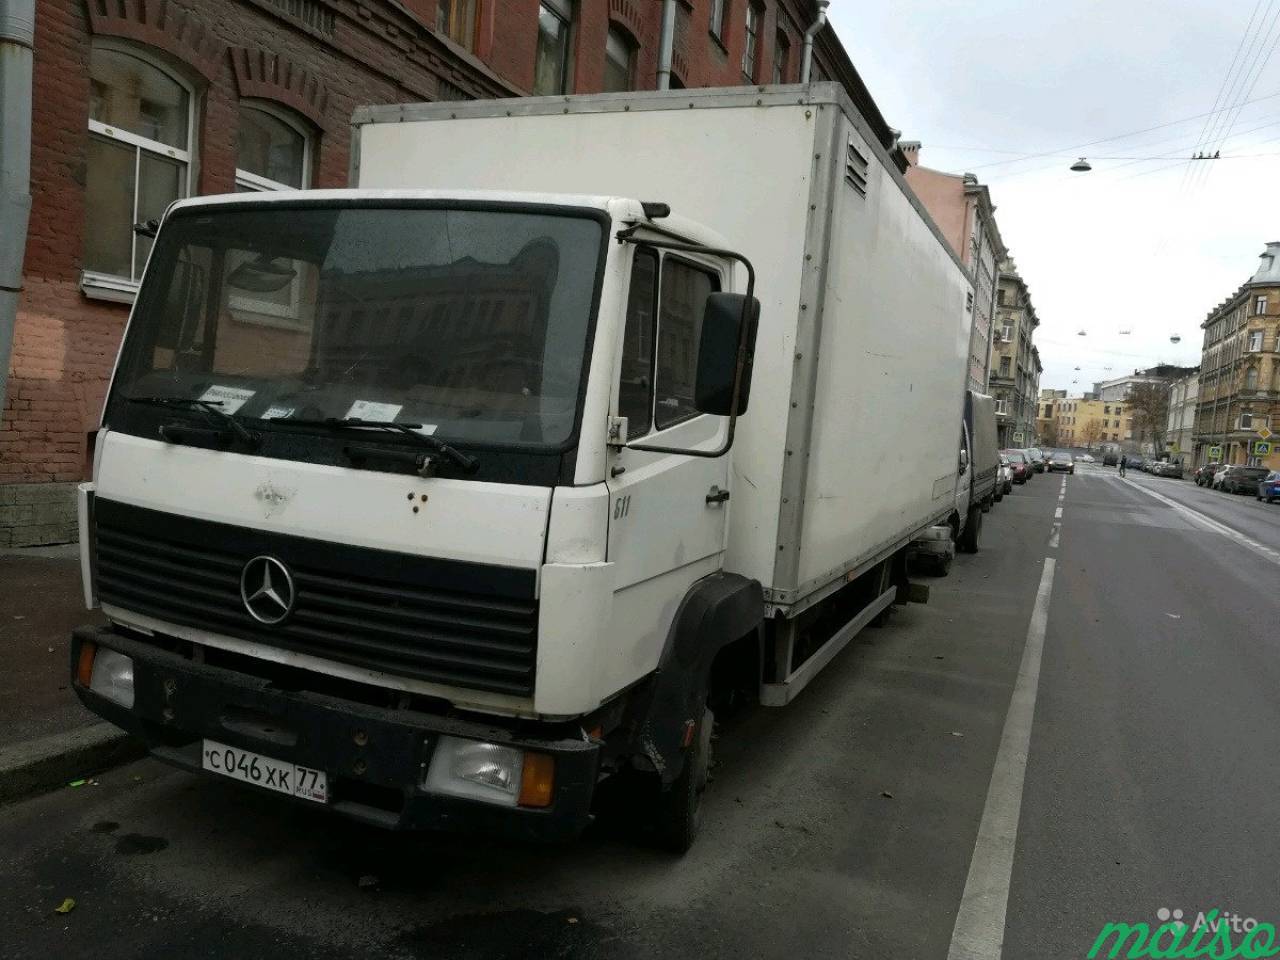 Мерседес 811 фургон изотермический в Санкт-Петербурге. Фото 1